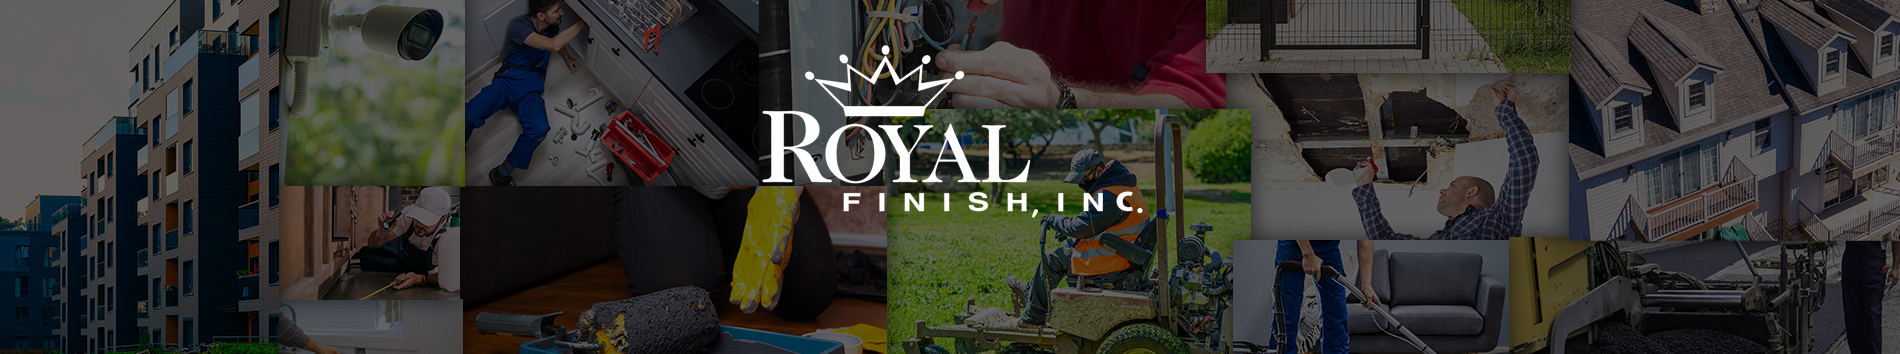 Royal Finish, Inc.